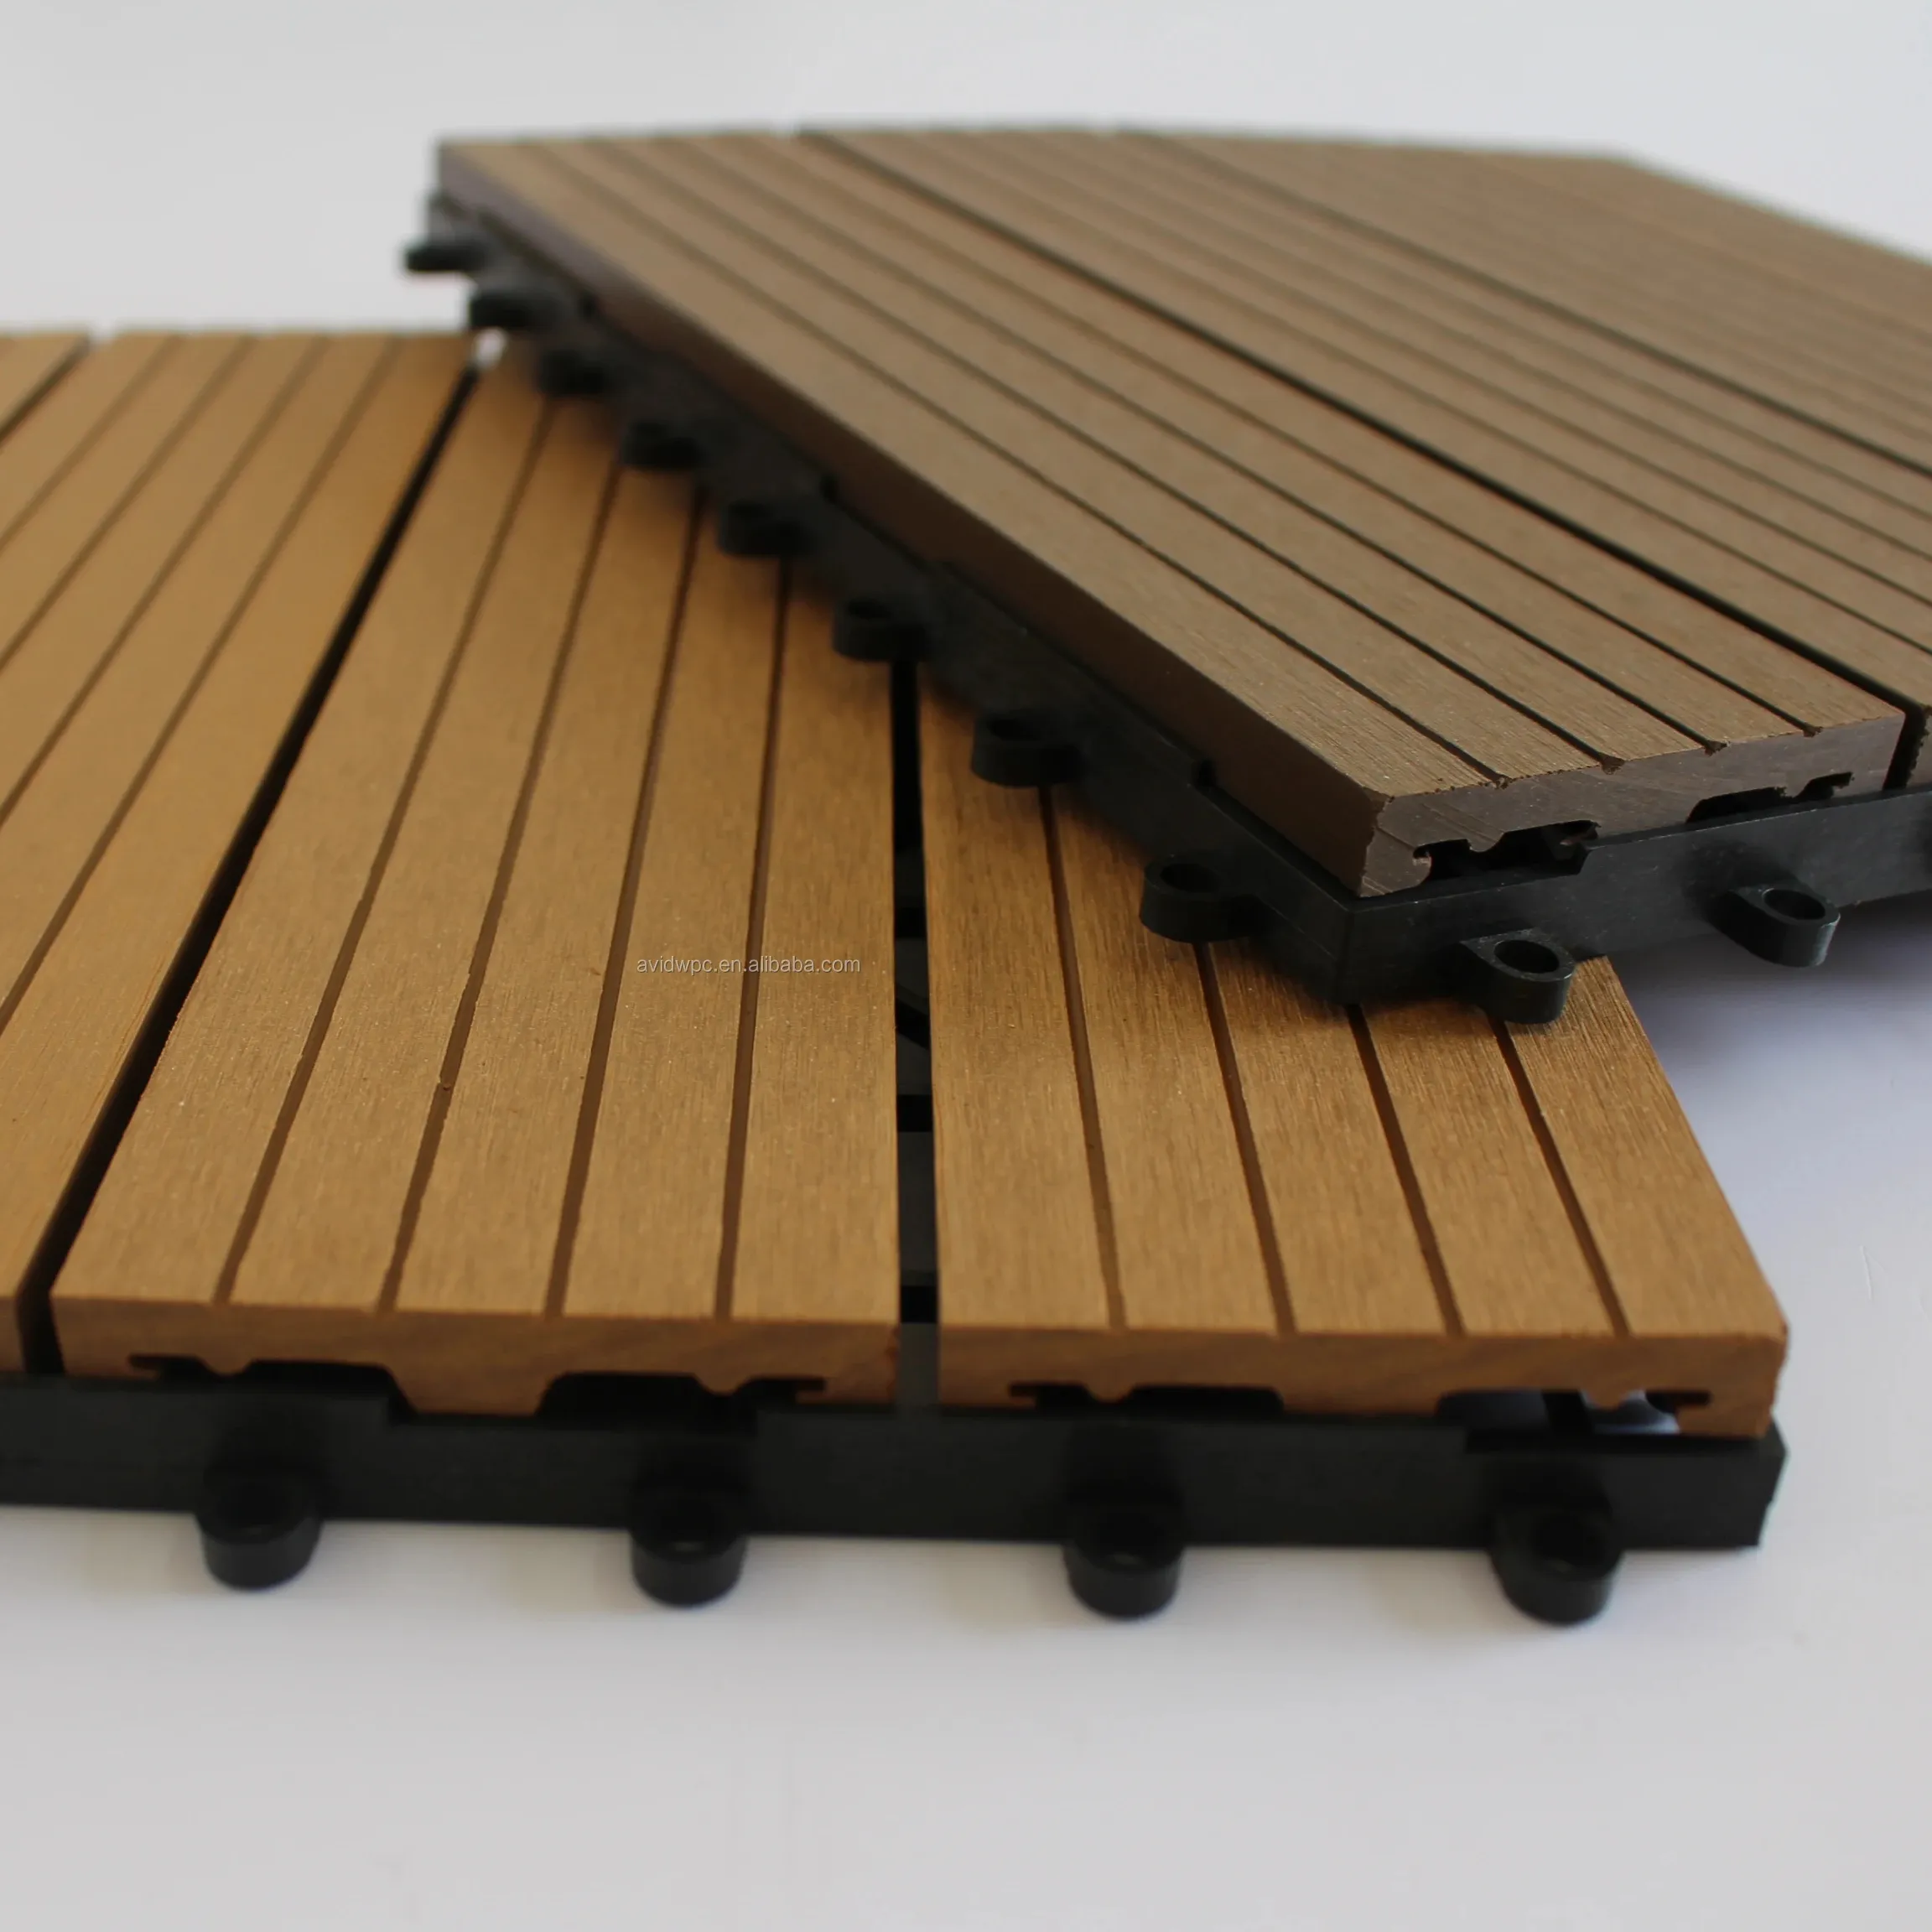 Nuevo material de construcción fácil de instalar anti-uv impermeable al aire libre baldosas piso para cubiertas al aire libre